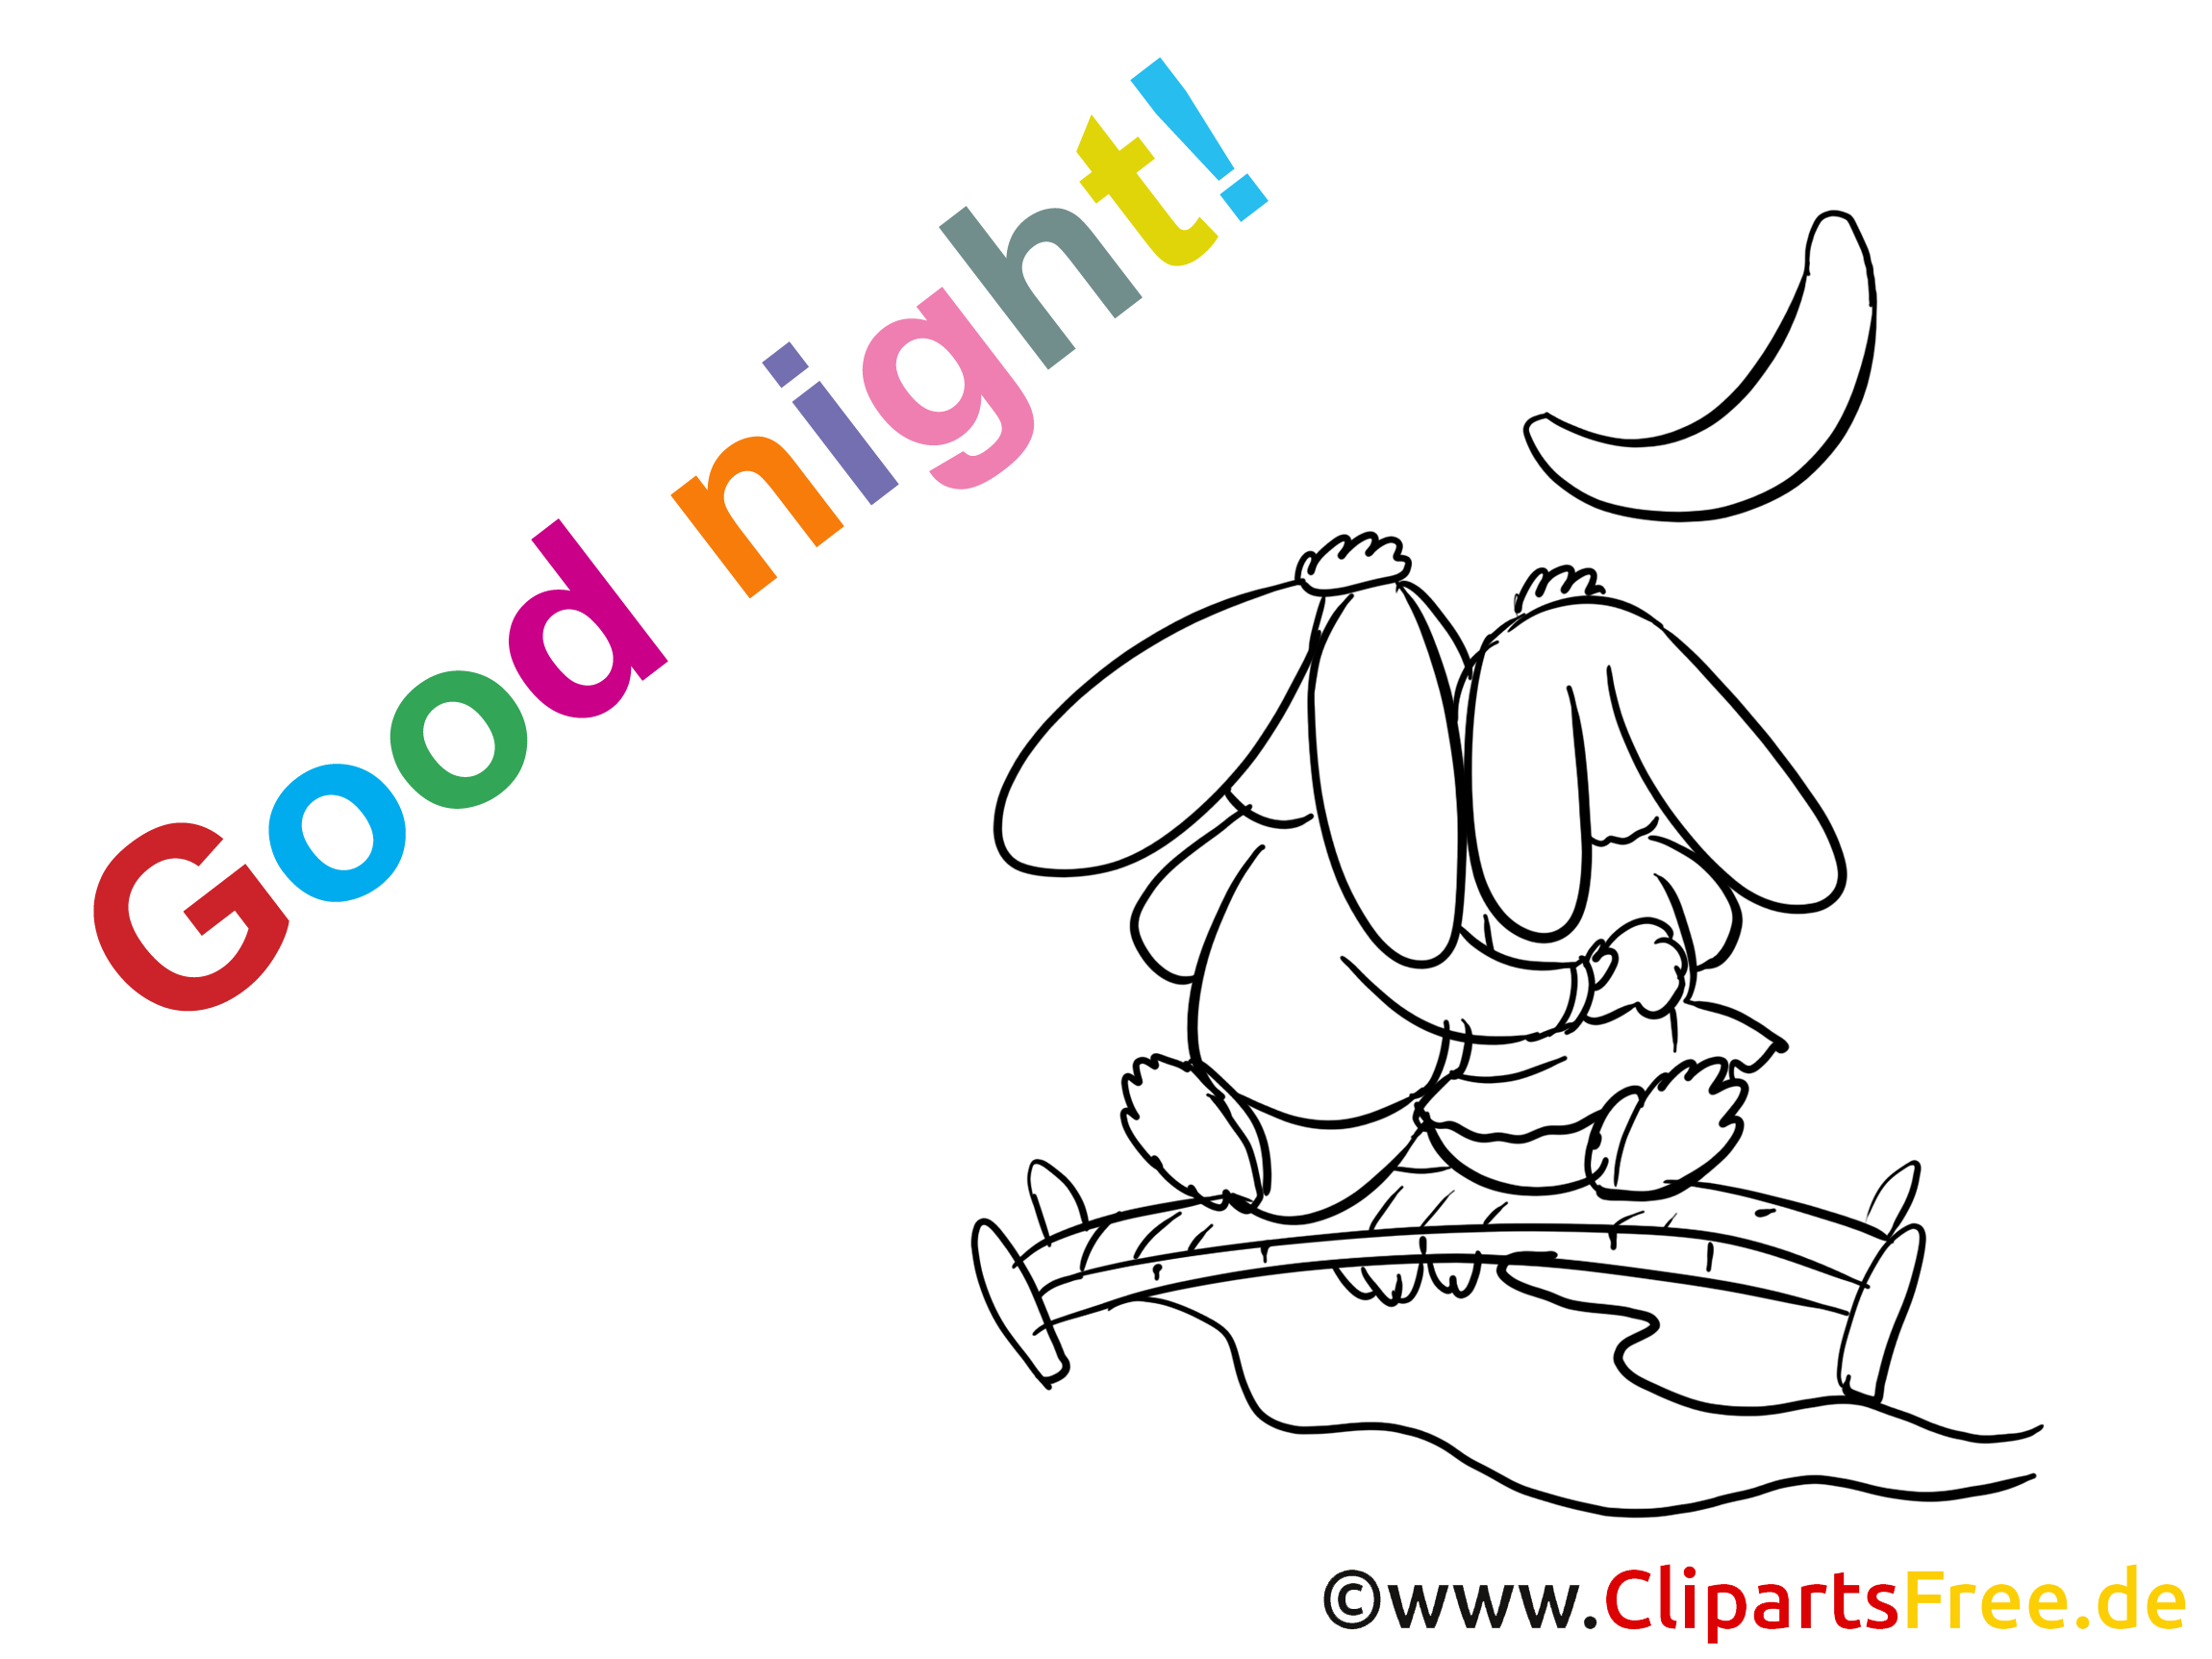 Image à imprimer lapins - Bonne nuit images cliparts